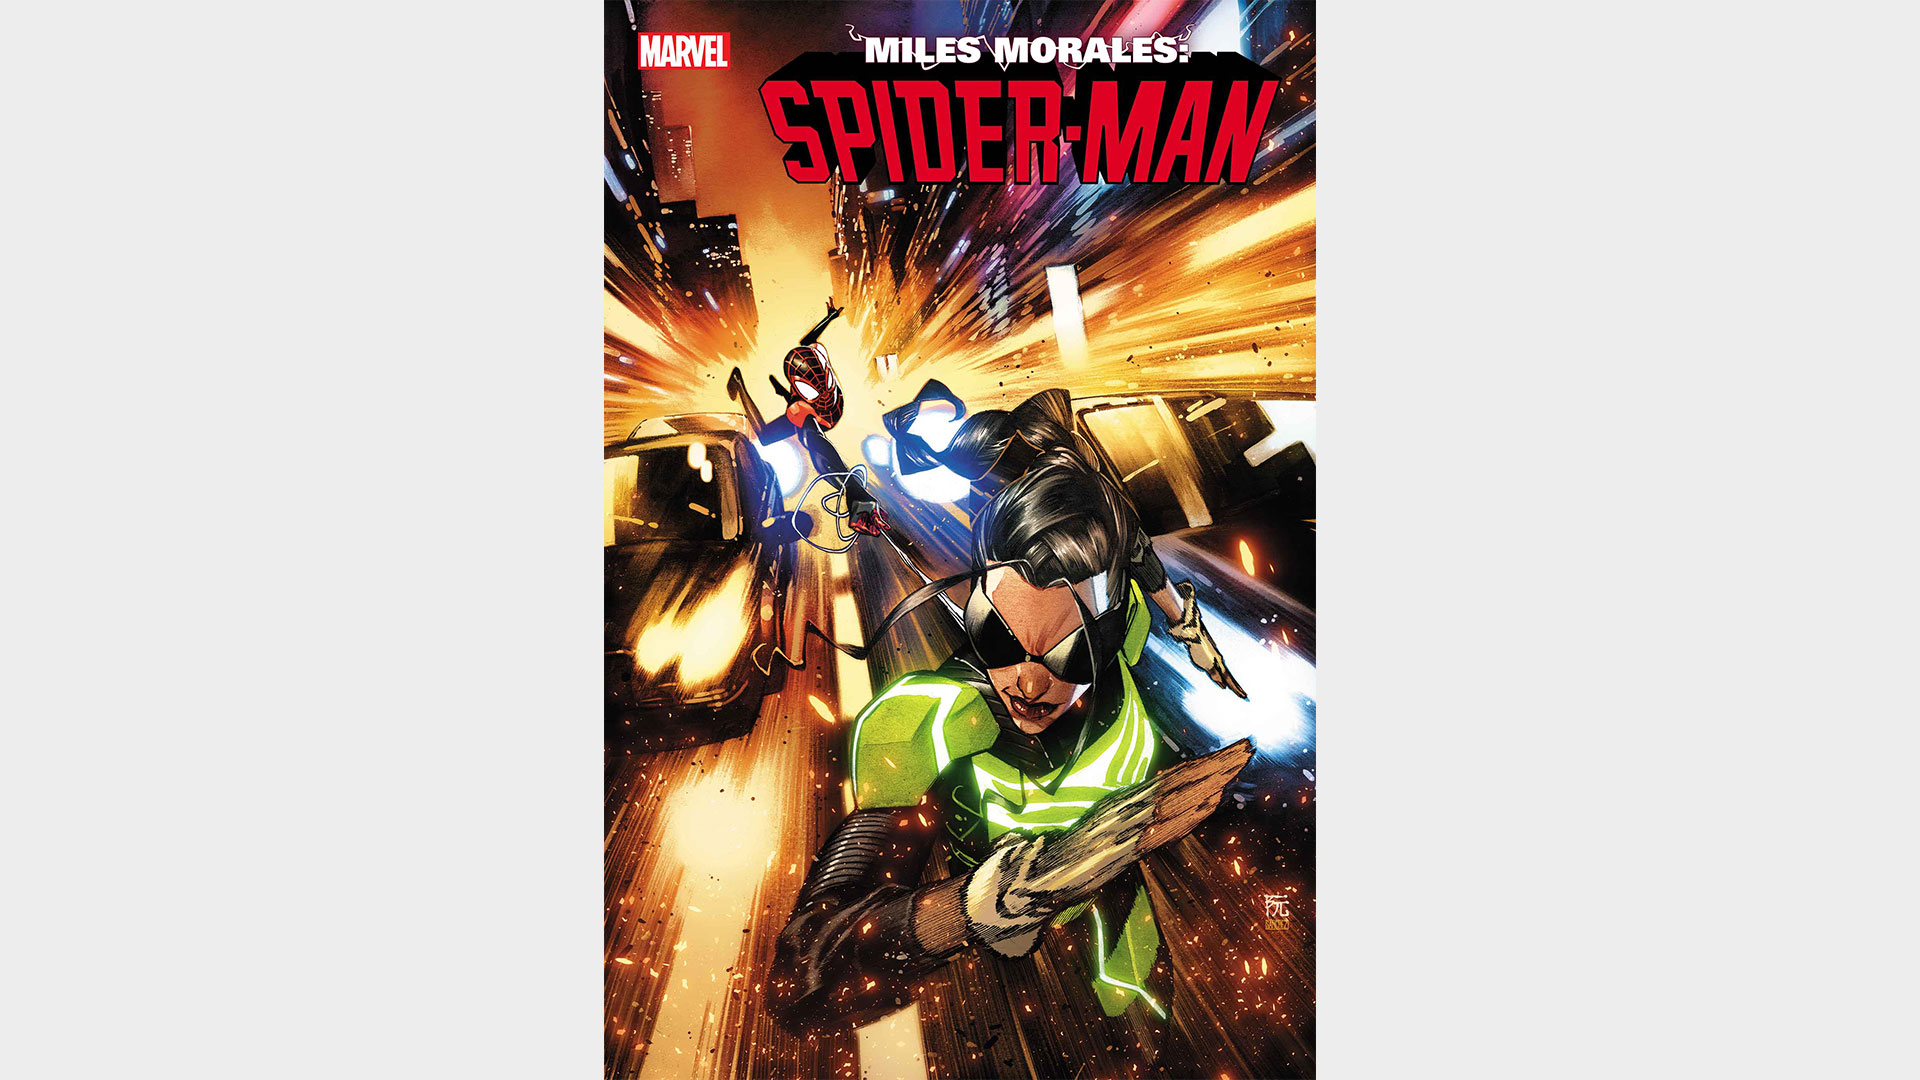 Miles Morales: Spider-Man #10 portada